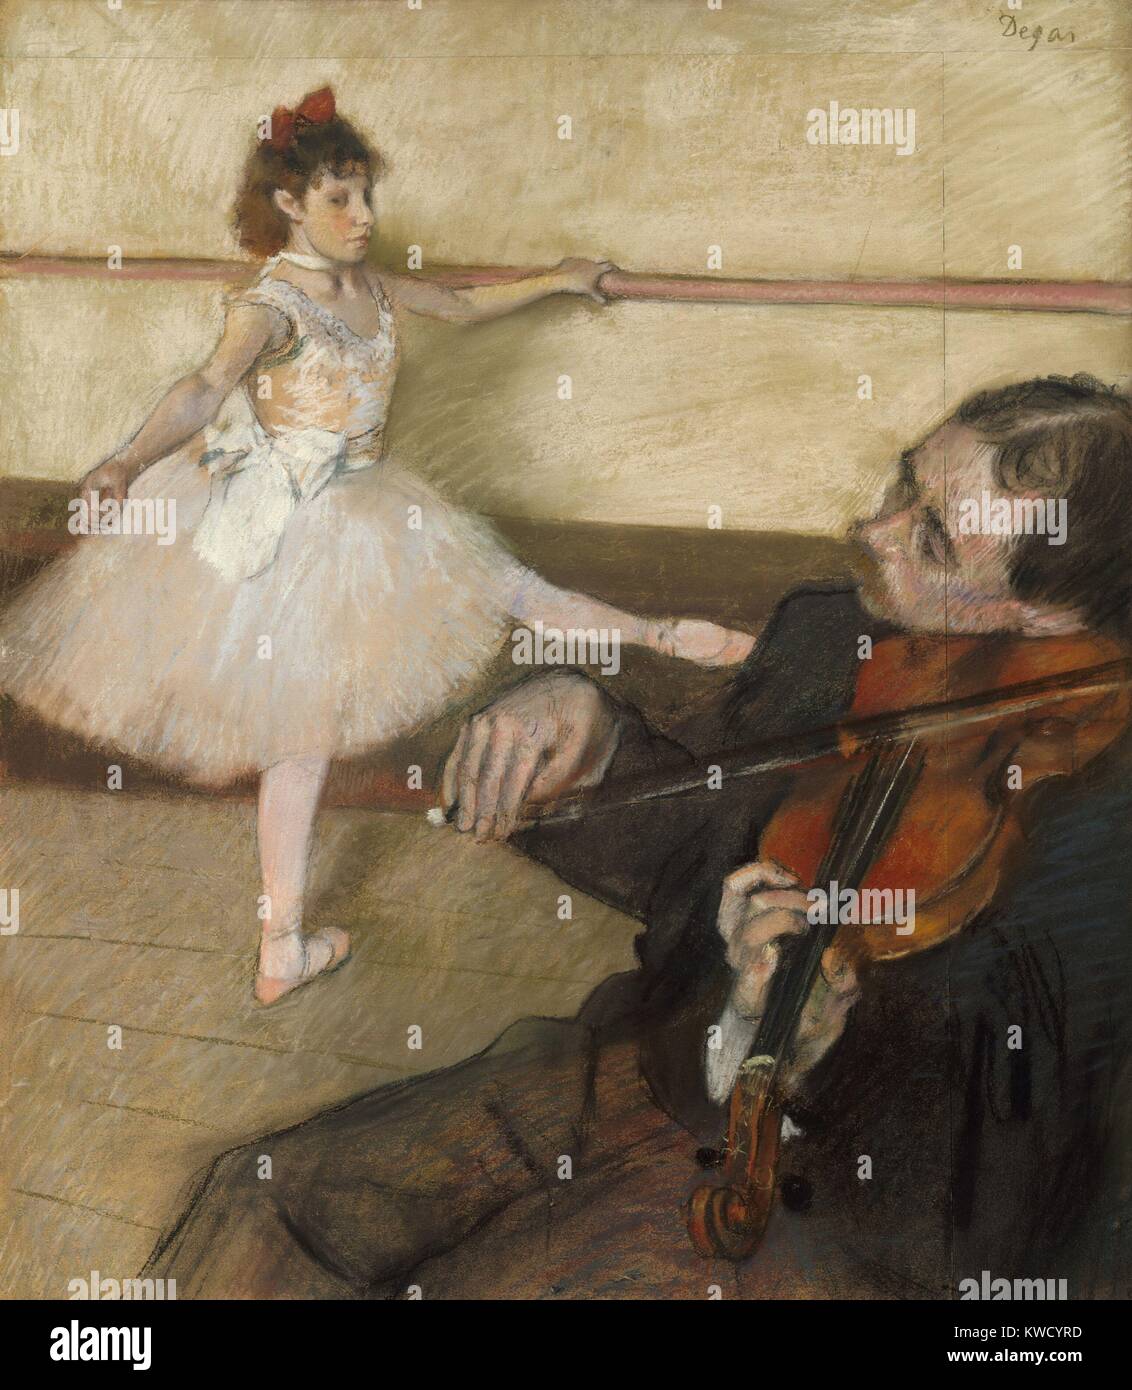 La leçon de danse, par Edgar Degas, 1879, dessin, impressionnistes français pastel sur papier. Degas ajouté un panneau de papier en haut et sur le droit d'incorporer le joueur de violon (BSLOC 2017 3 108) Banque D'Images